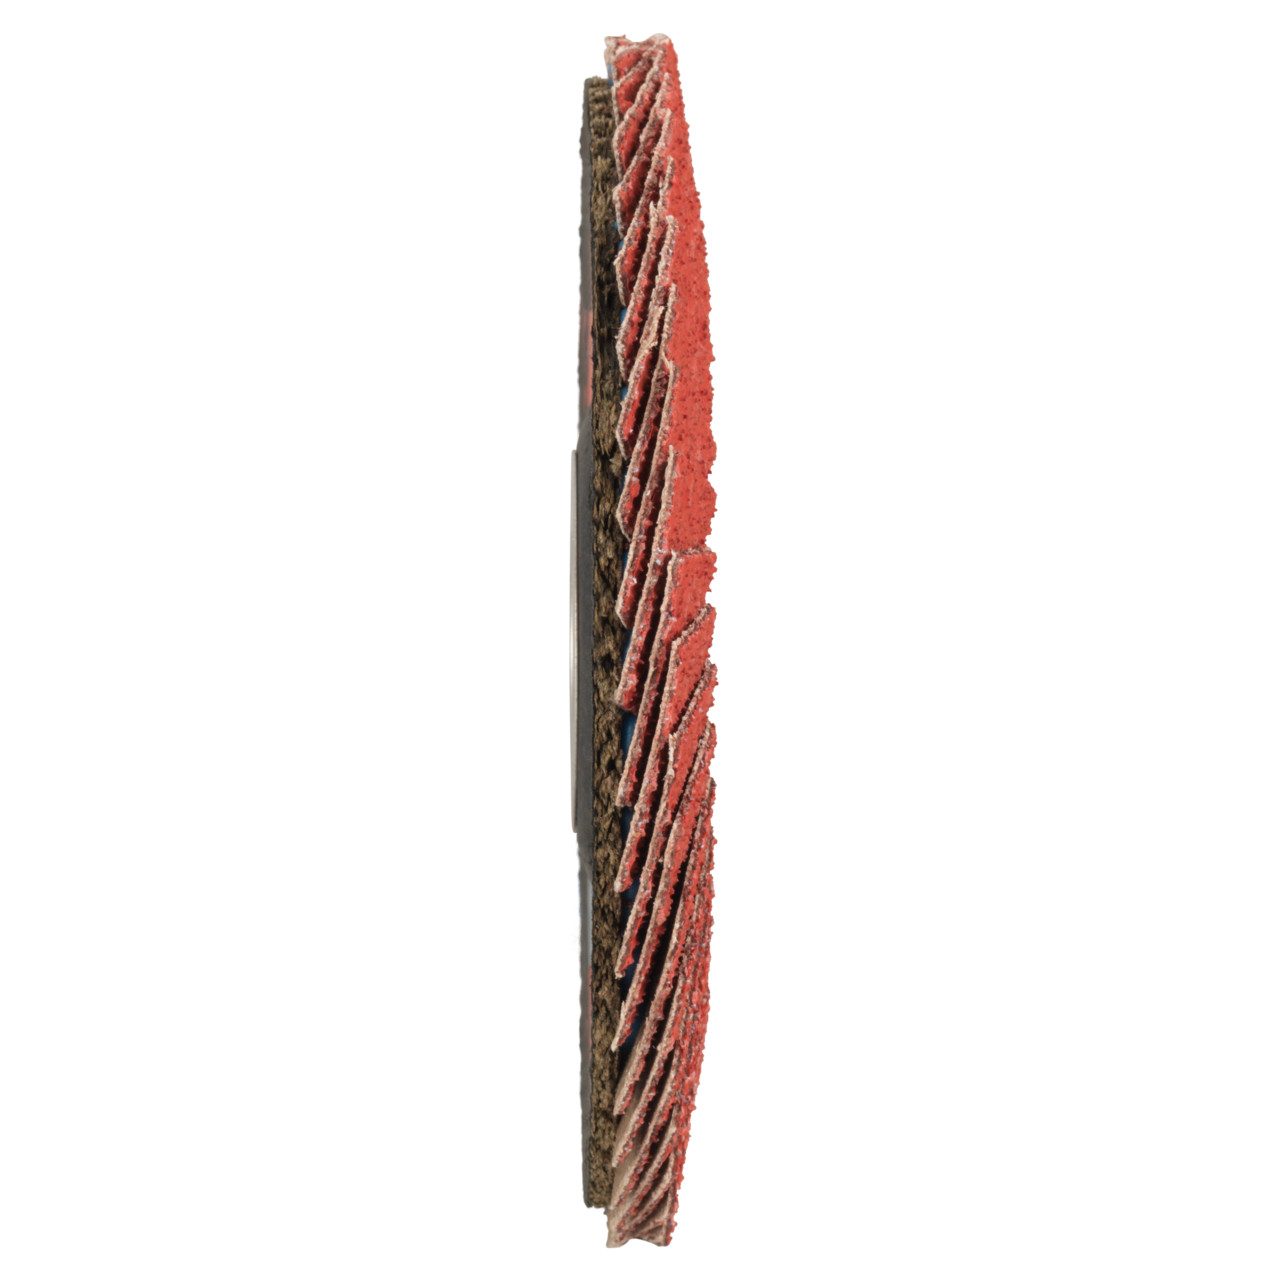 Tyrolit Rondelle éventail DxH 115x22,2 CERAMIC pour acier inoxydable, P40, forme : 27A - version coudée (version corps de support en fibre de verre), art. 645130